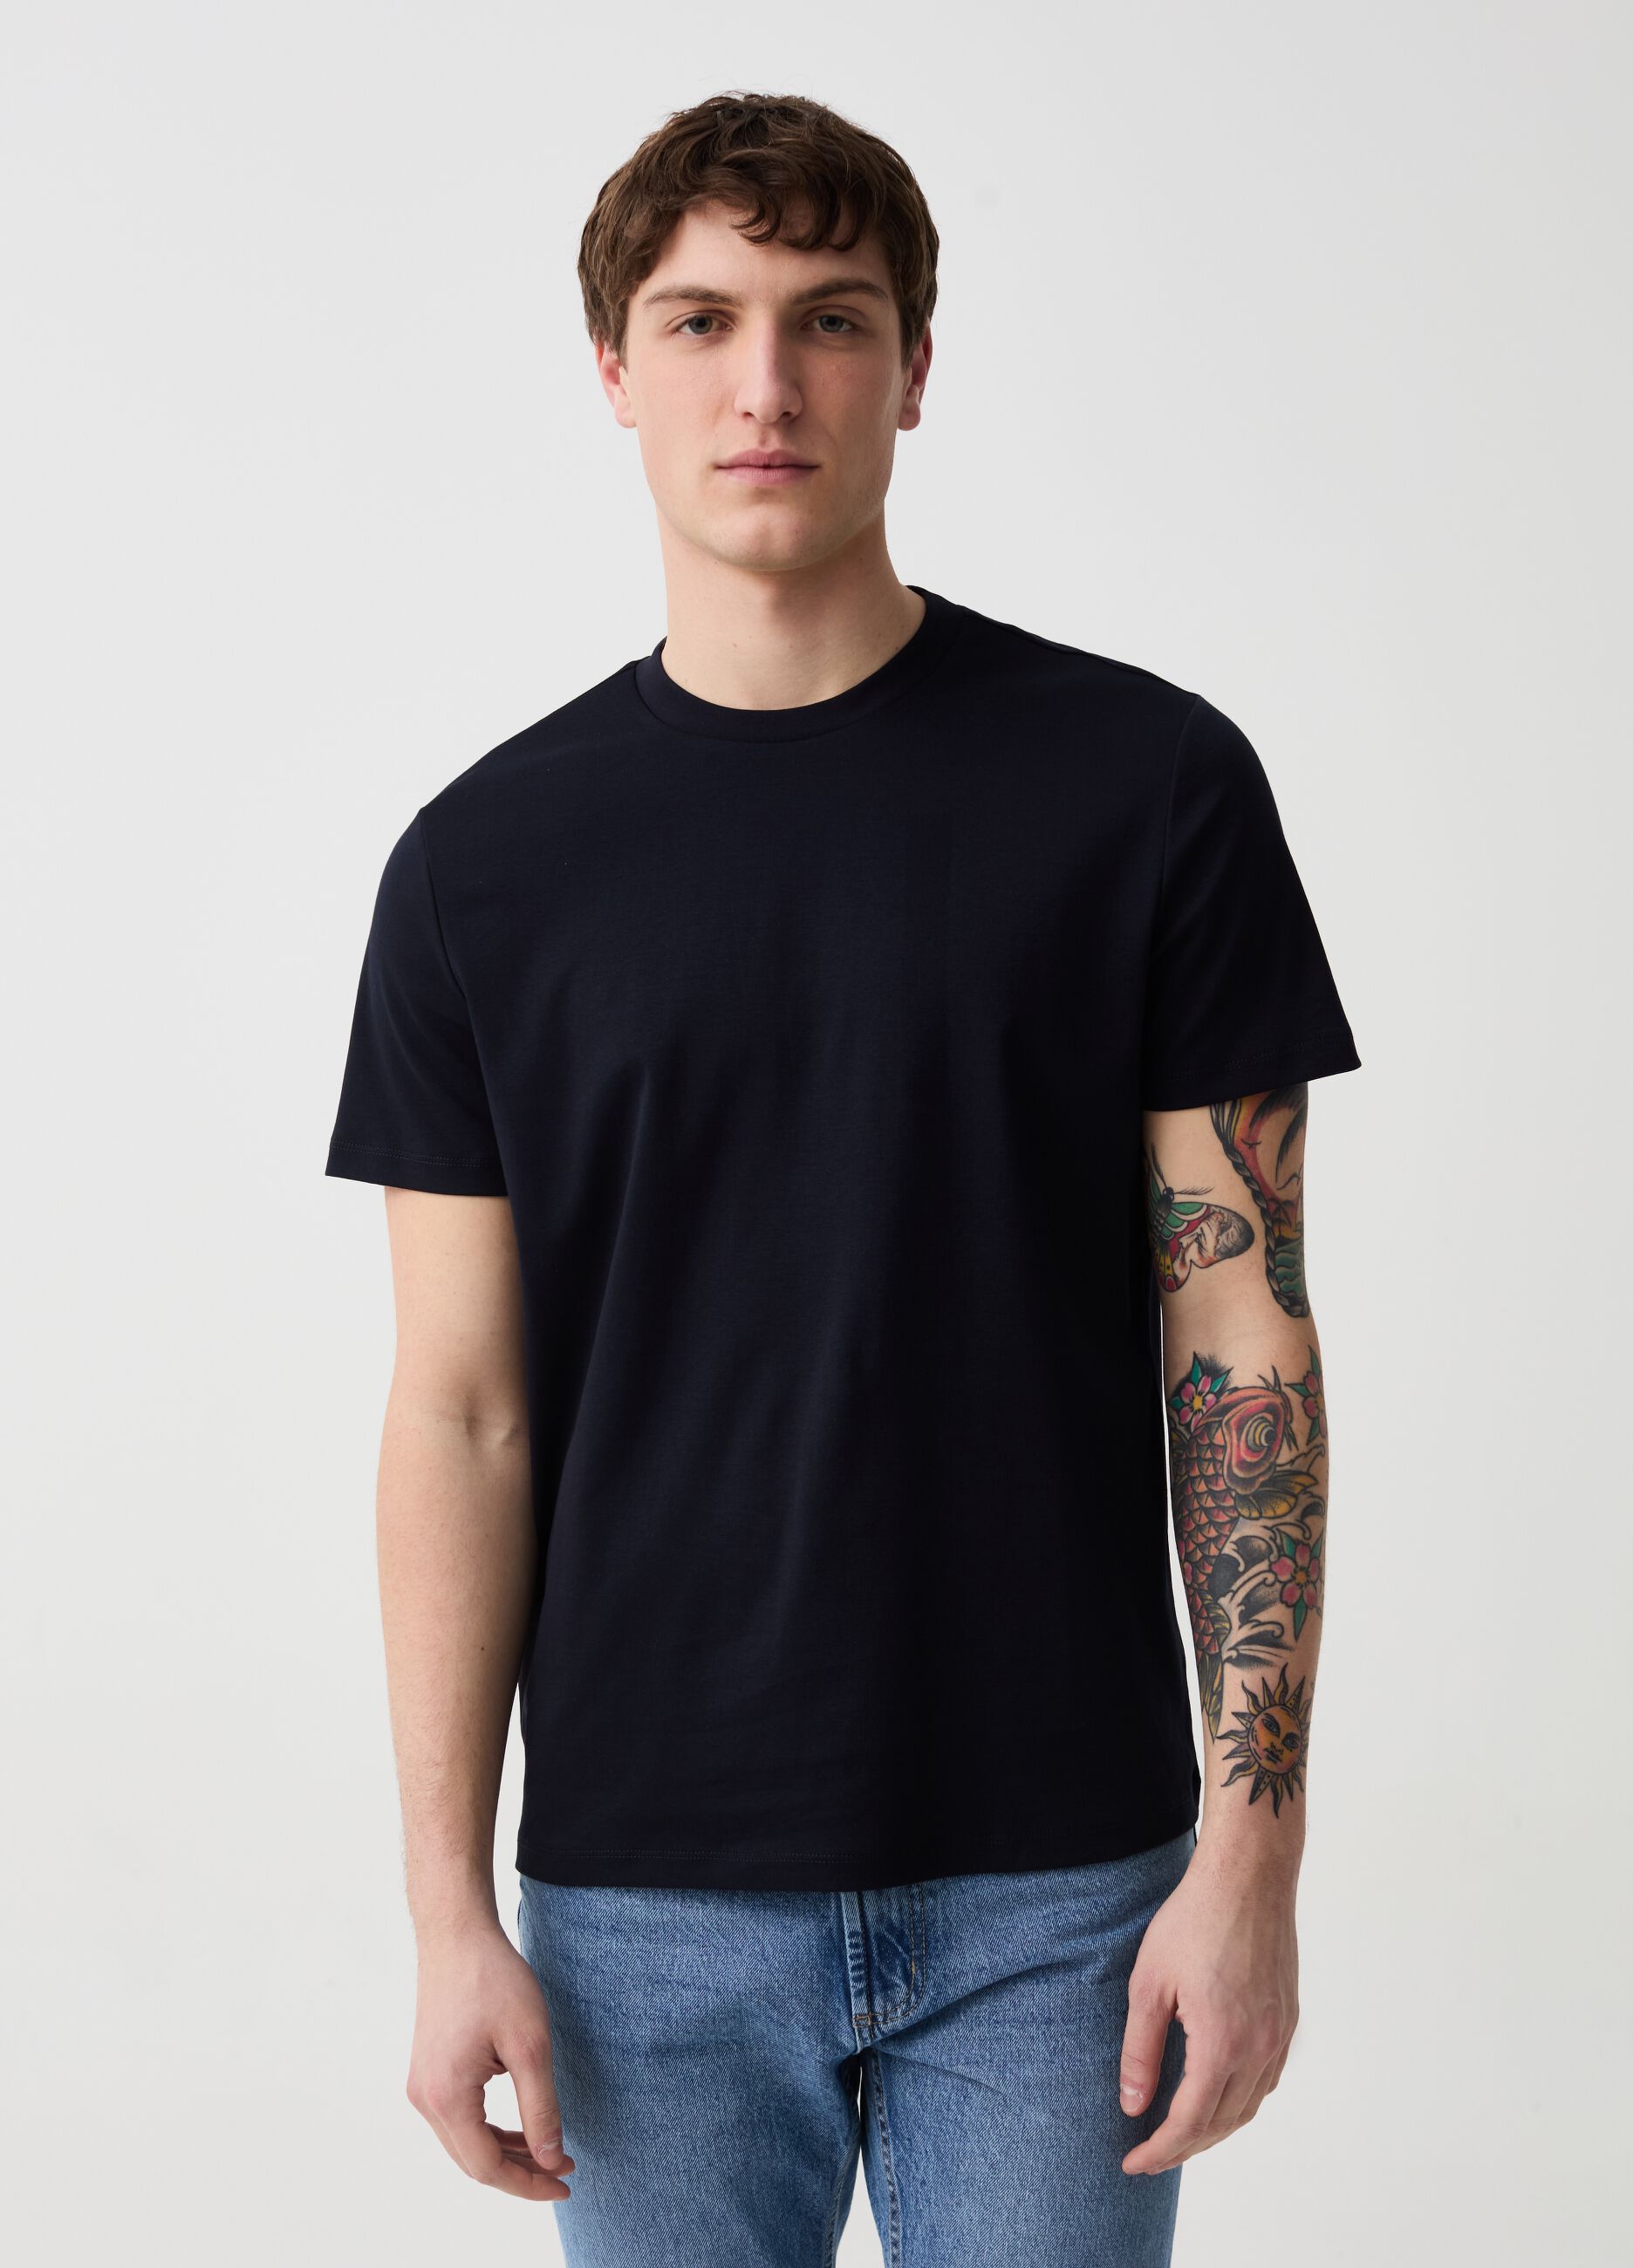 Premium regular-fit T-shirt in cotton